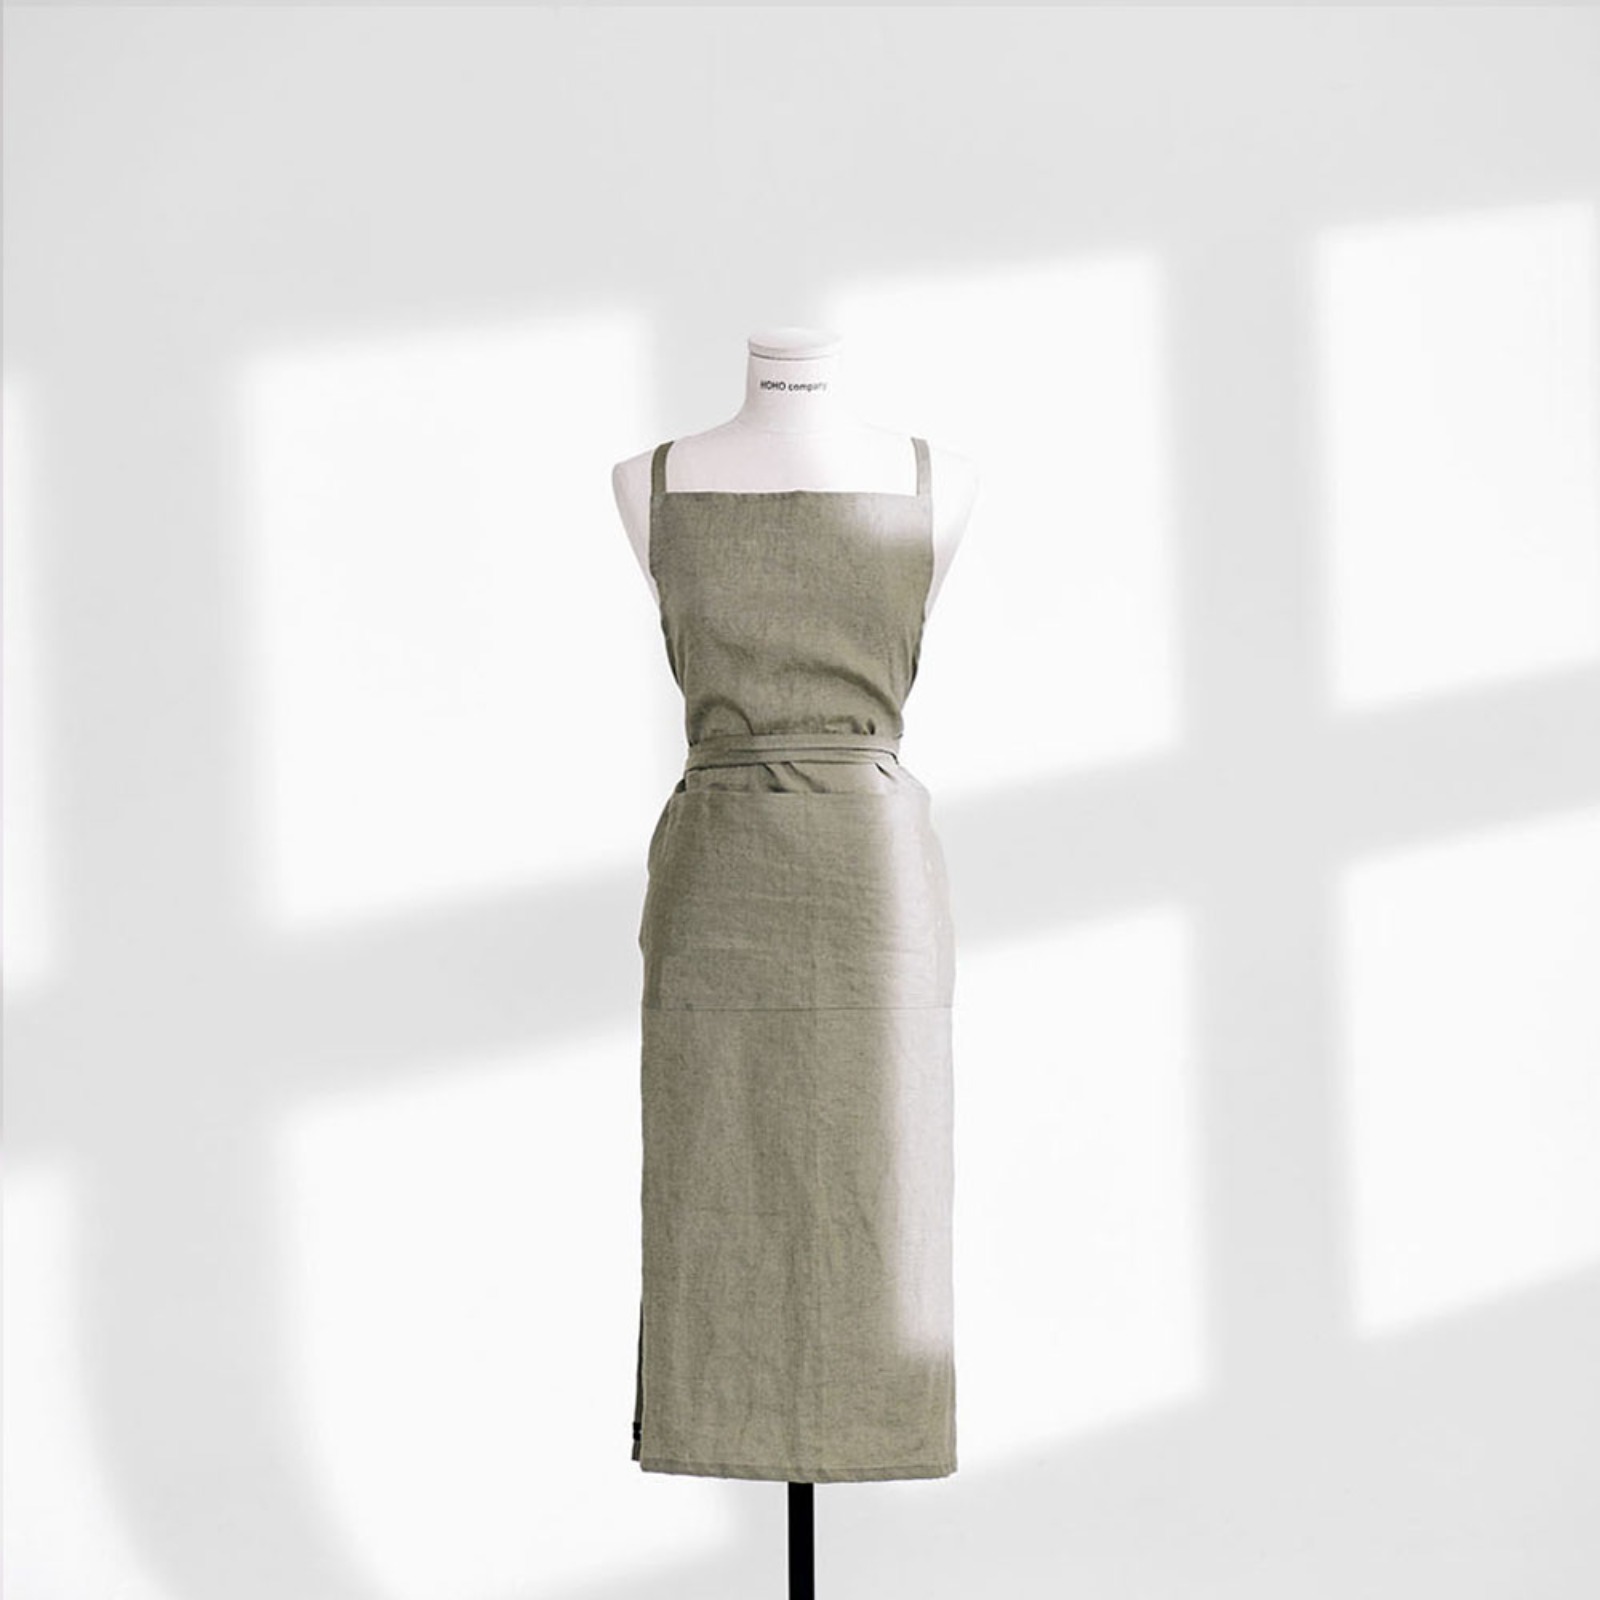 챕터원,[Spring fabric collection, 10%] 프리미엄 린넨 에이프런_파스텔 카키